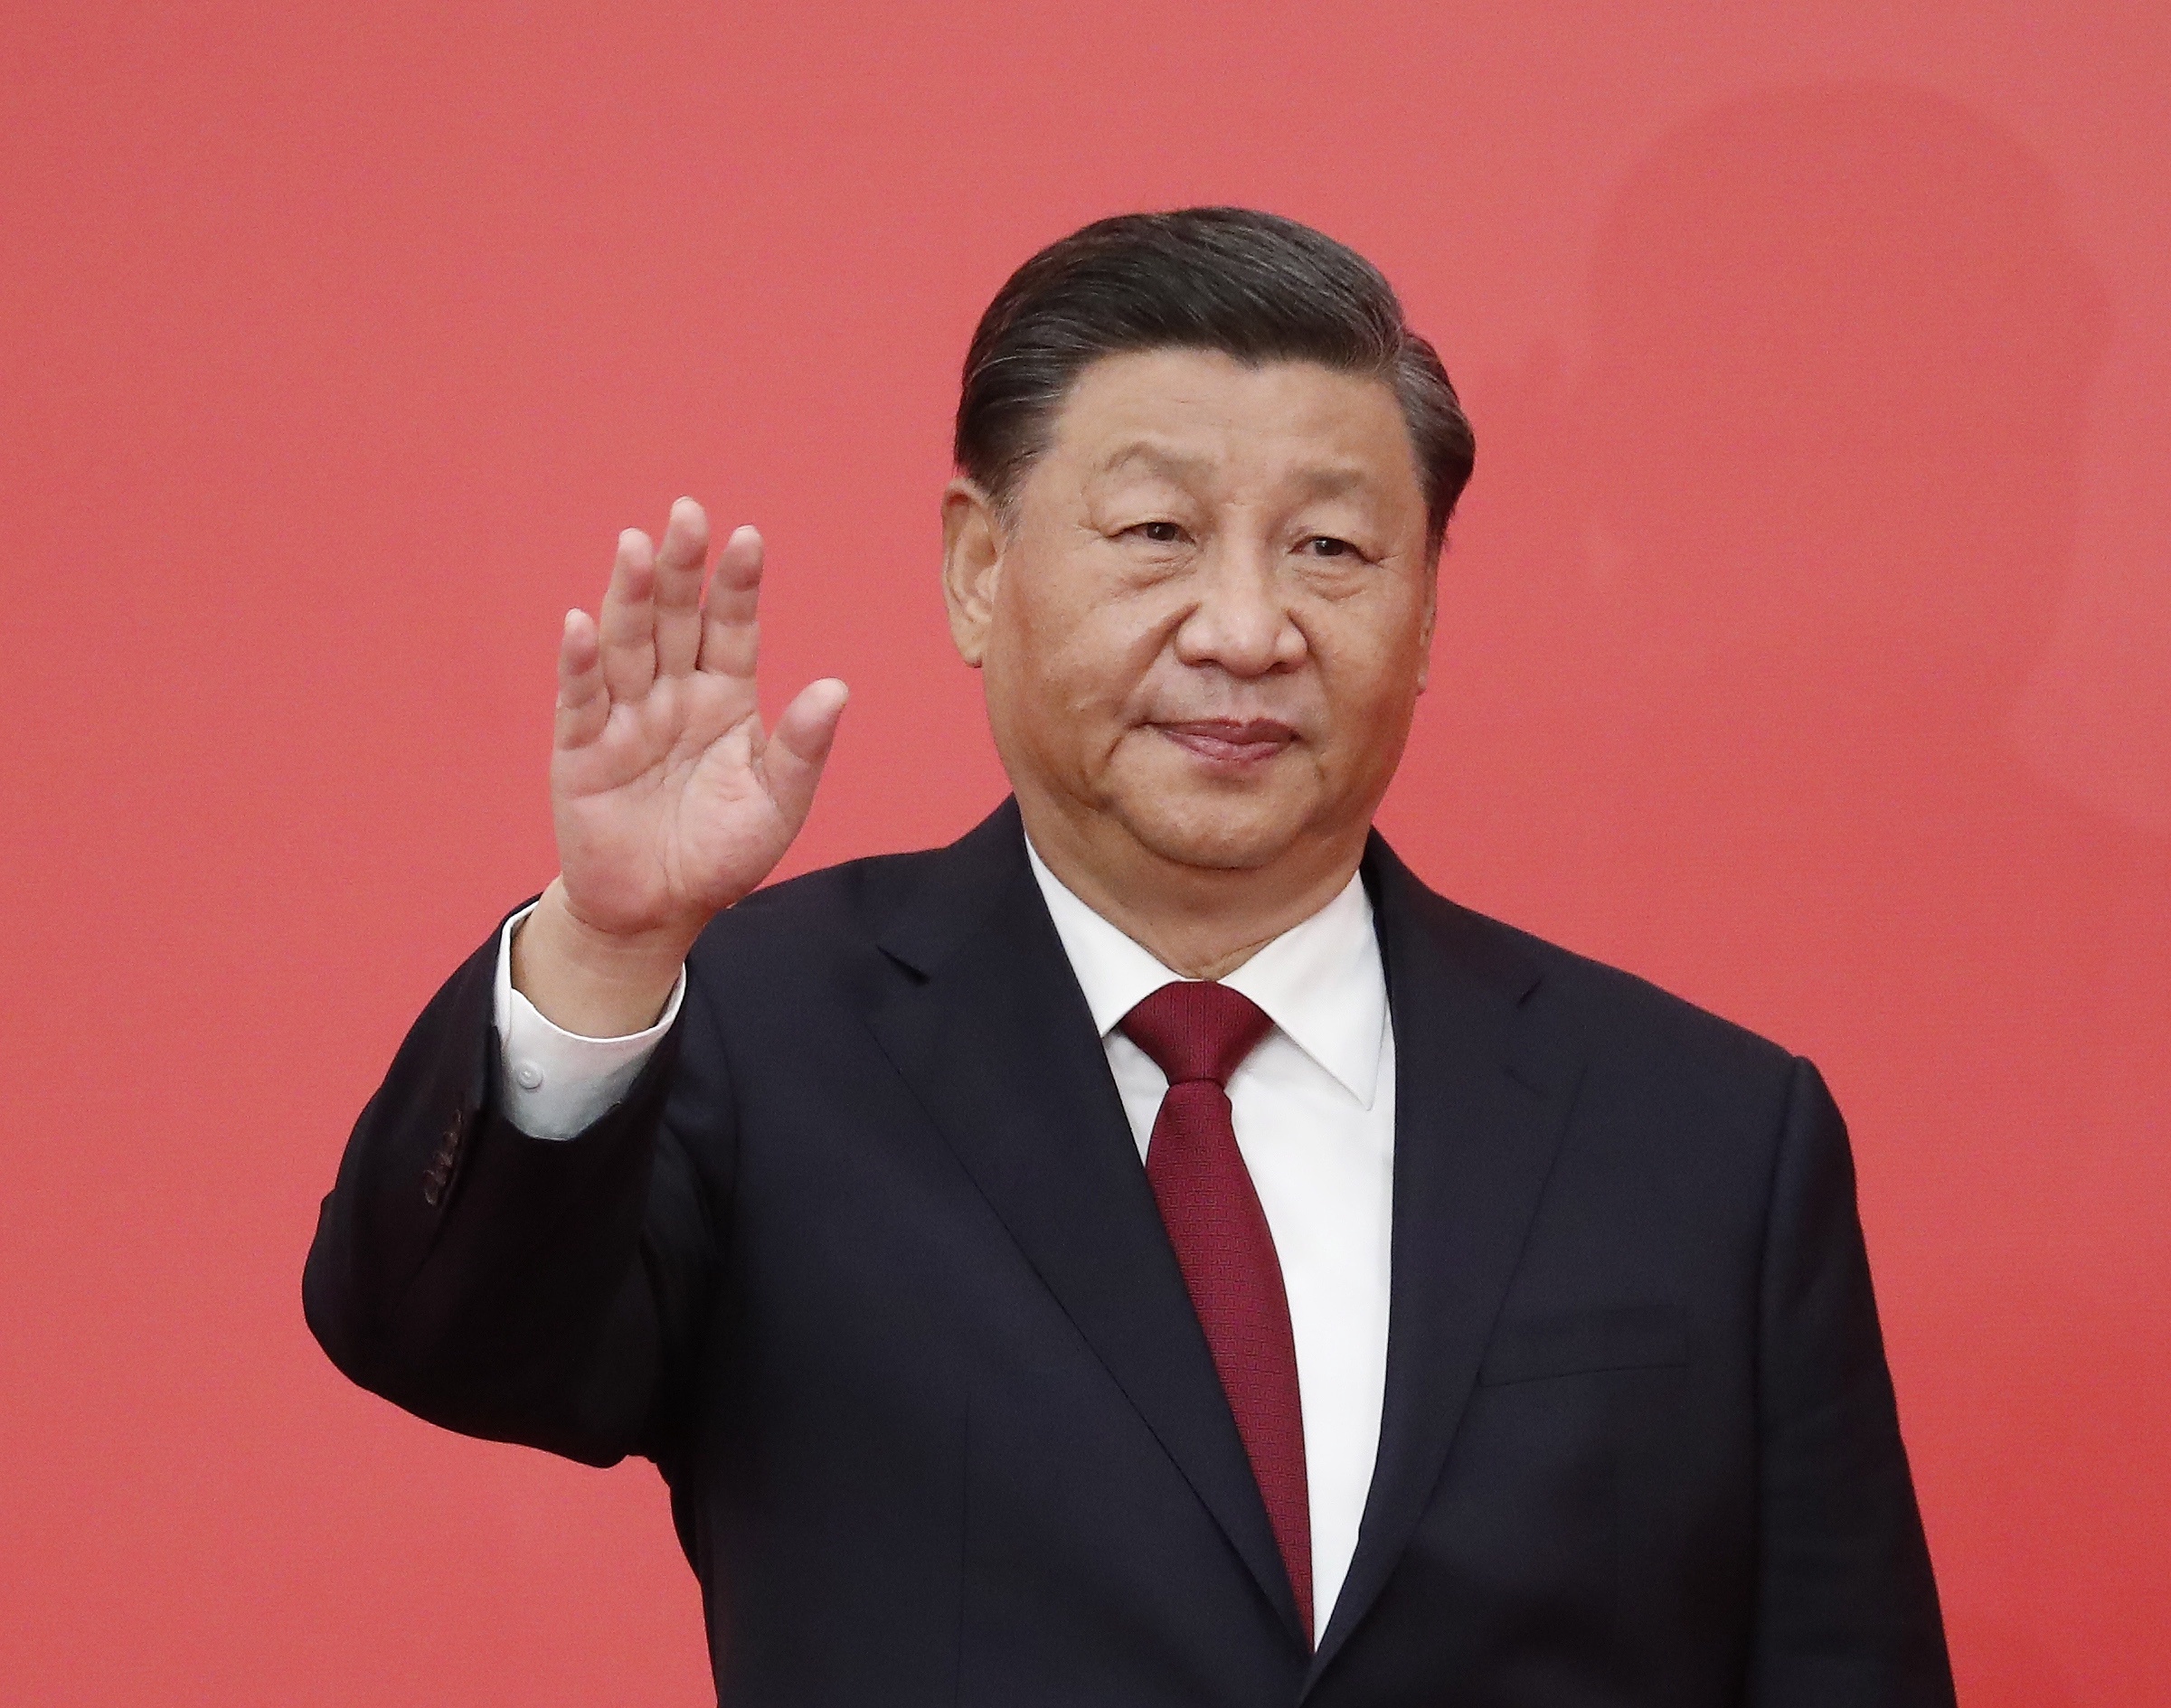 De Chinese president Xi Jinping is zoals verwacht opnieuw gekozen tot secretaris-generaal van de Communistische Partij van China. 